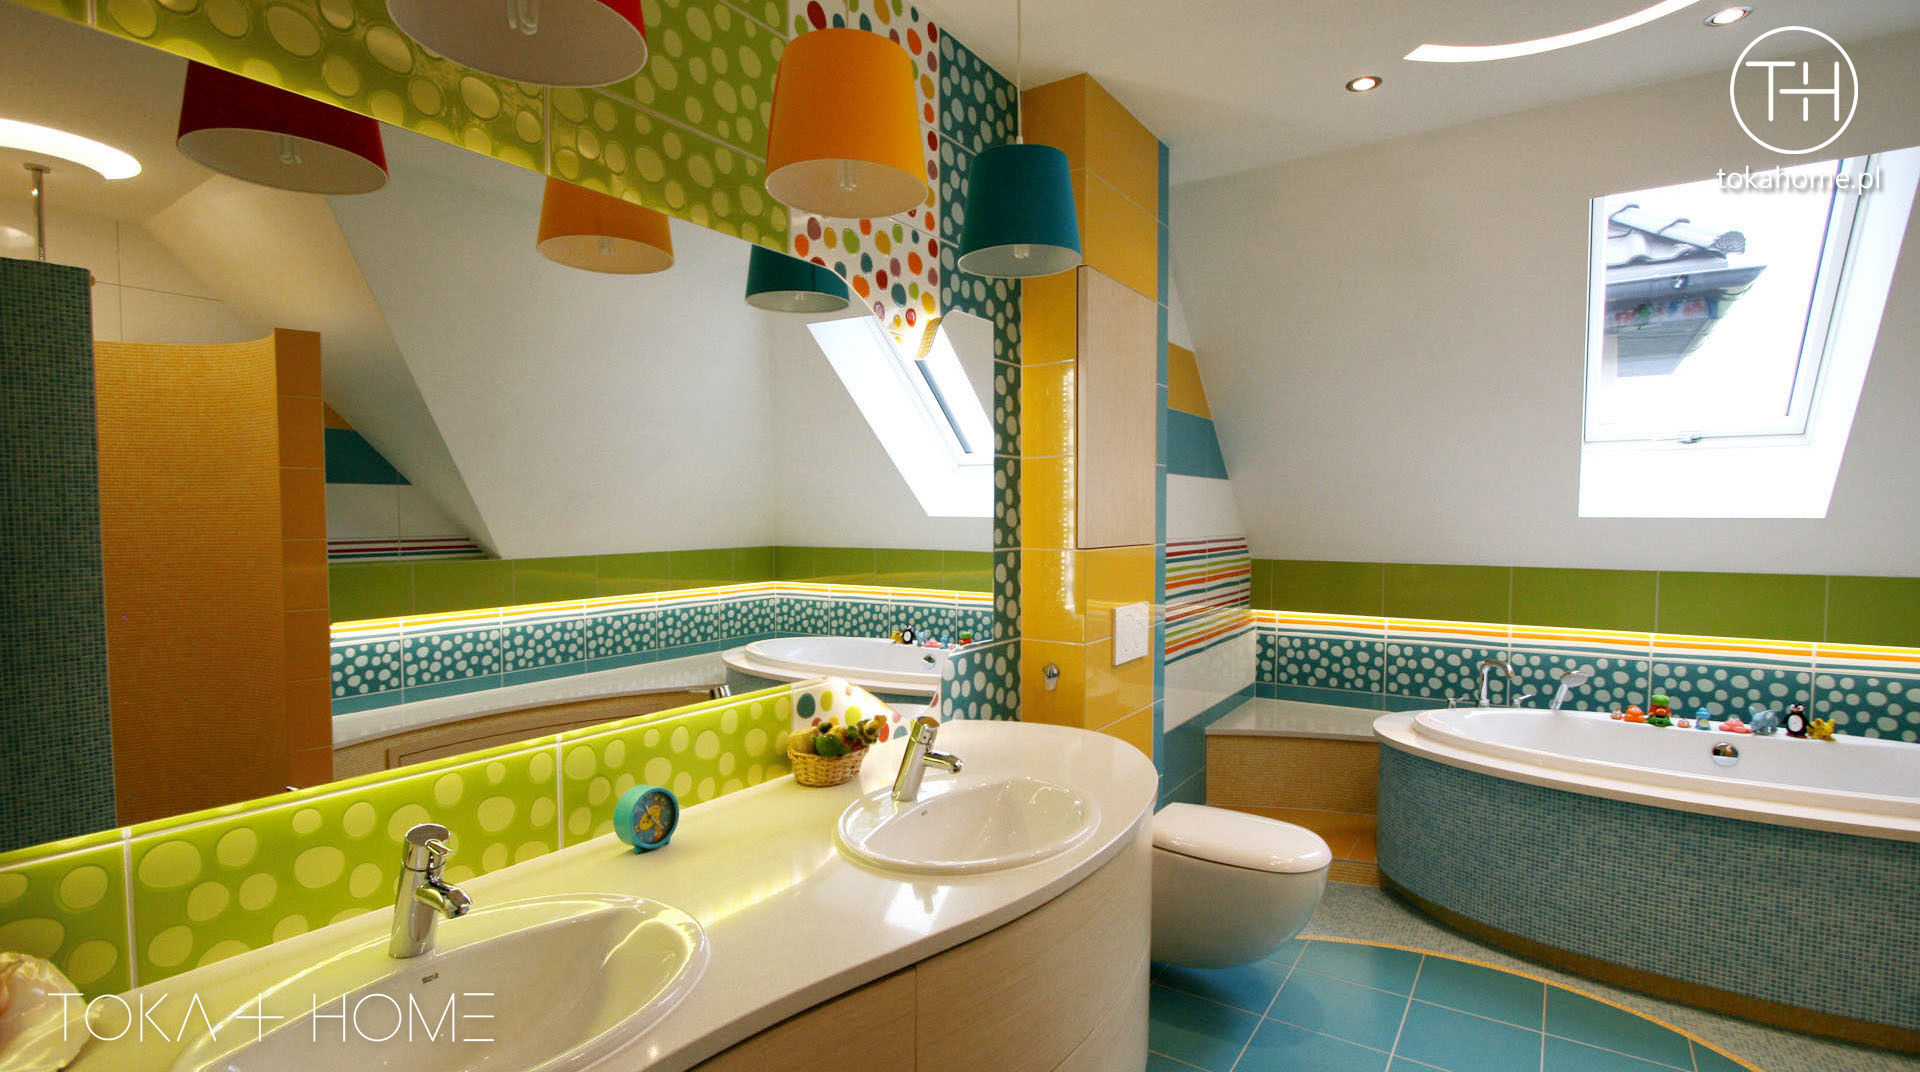 Zaczarowany świat - łazienka dla dzieci, TOKA + HOME TOKA + HOME Kamar Mandi Modern Keramik